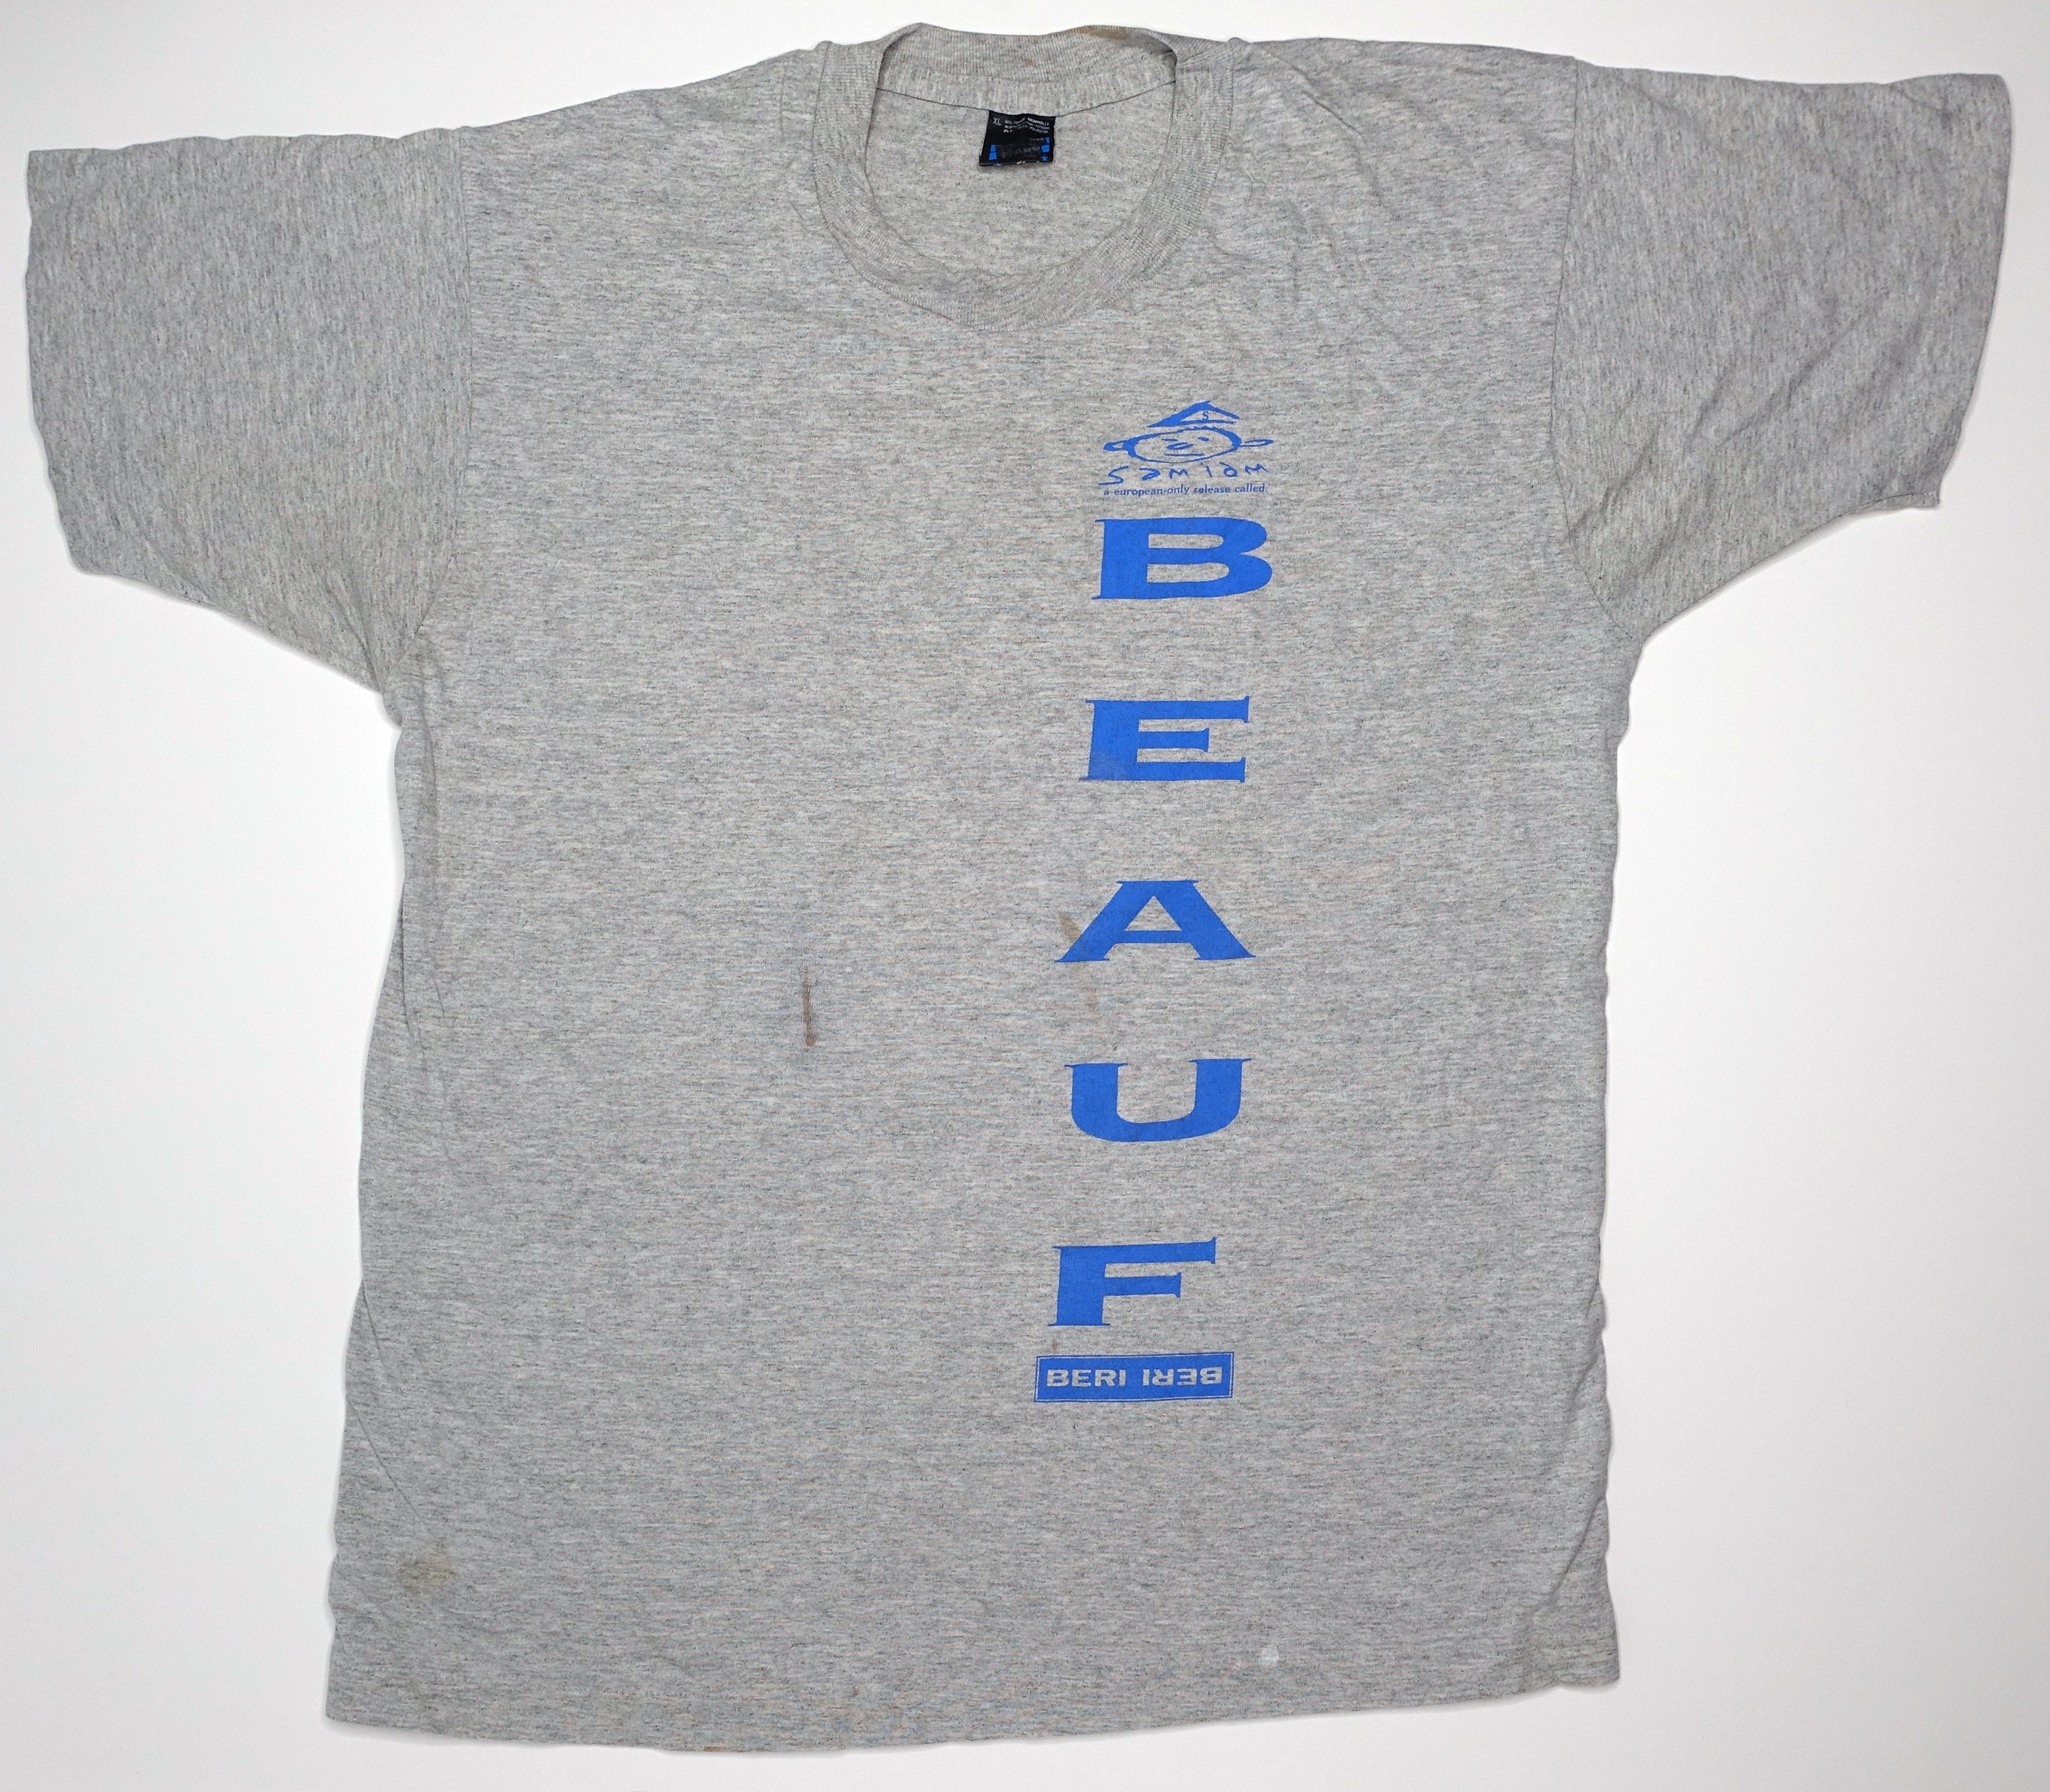 Samiam - Beauf 1991 Germany Tour Shirt Size XL